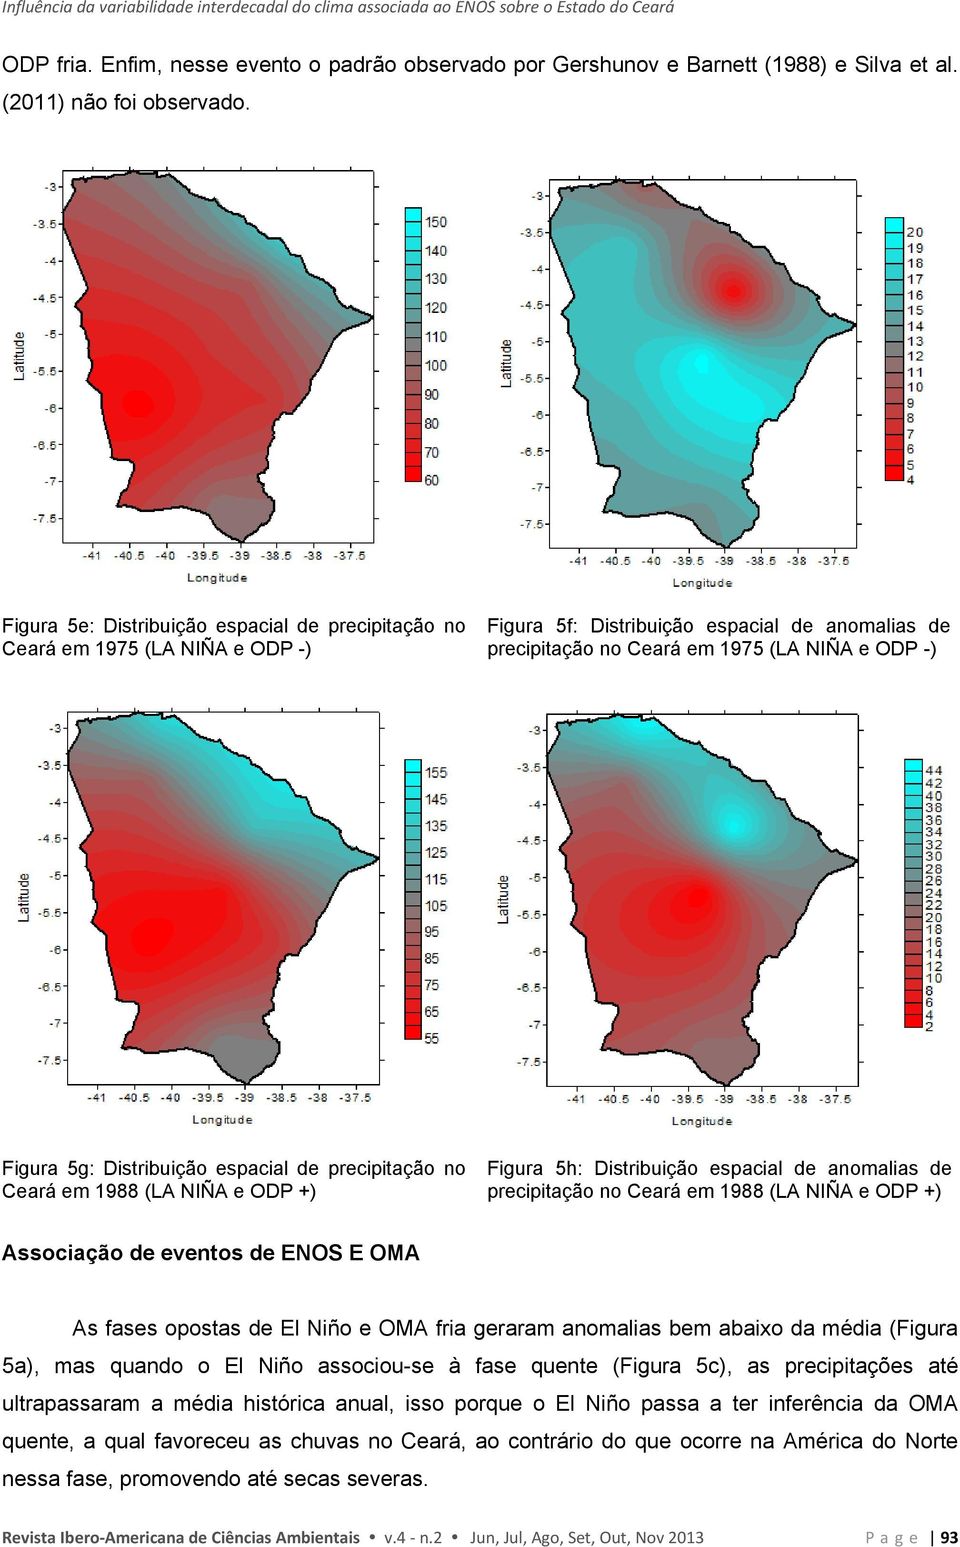 Figura 5e: Distribuição espacial de precipitação no Ceará em 1975 (LA NIÑA e ODP -) Figura 5f: Distribuição espacial de anomalias de precipitação no Ceará em 1975 (LA NIÑA e ODP -) Figura 5g: